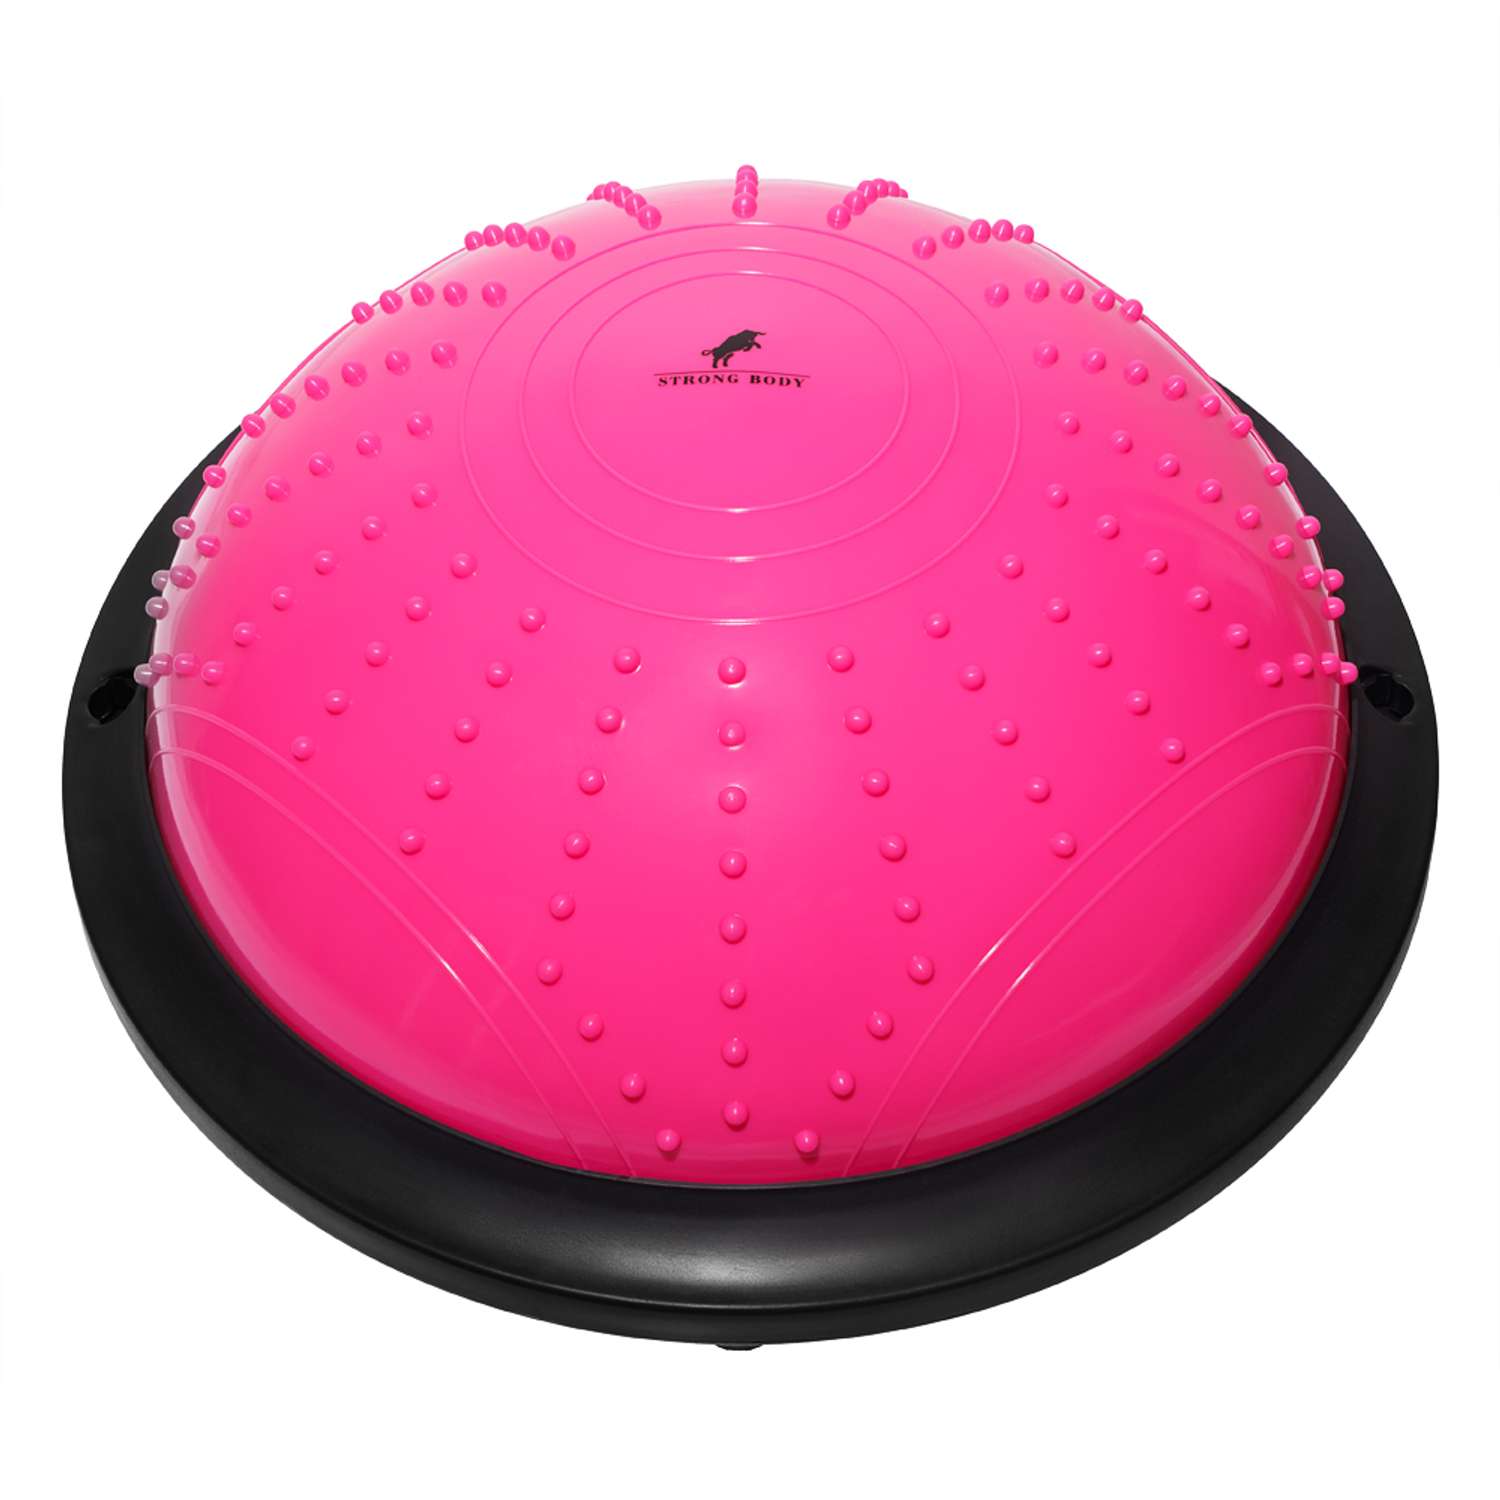 Балансировочная полусфера BOSU STRONG BODY в комплекте со съемными эспандерами розовая - фото 2